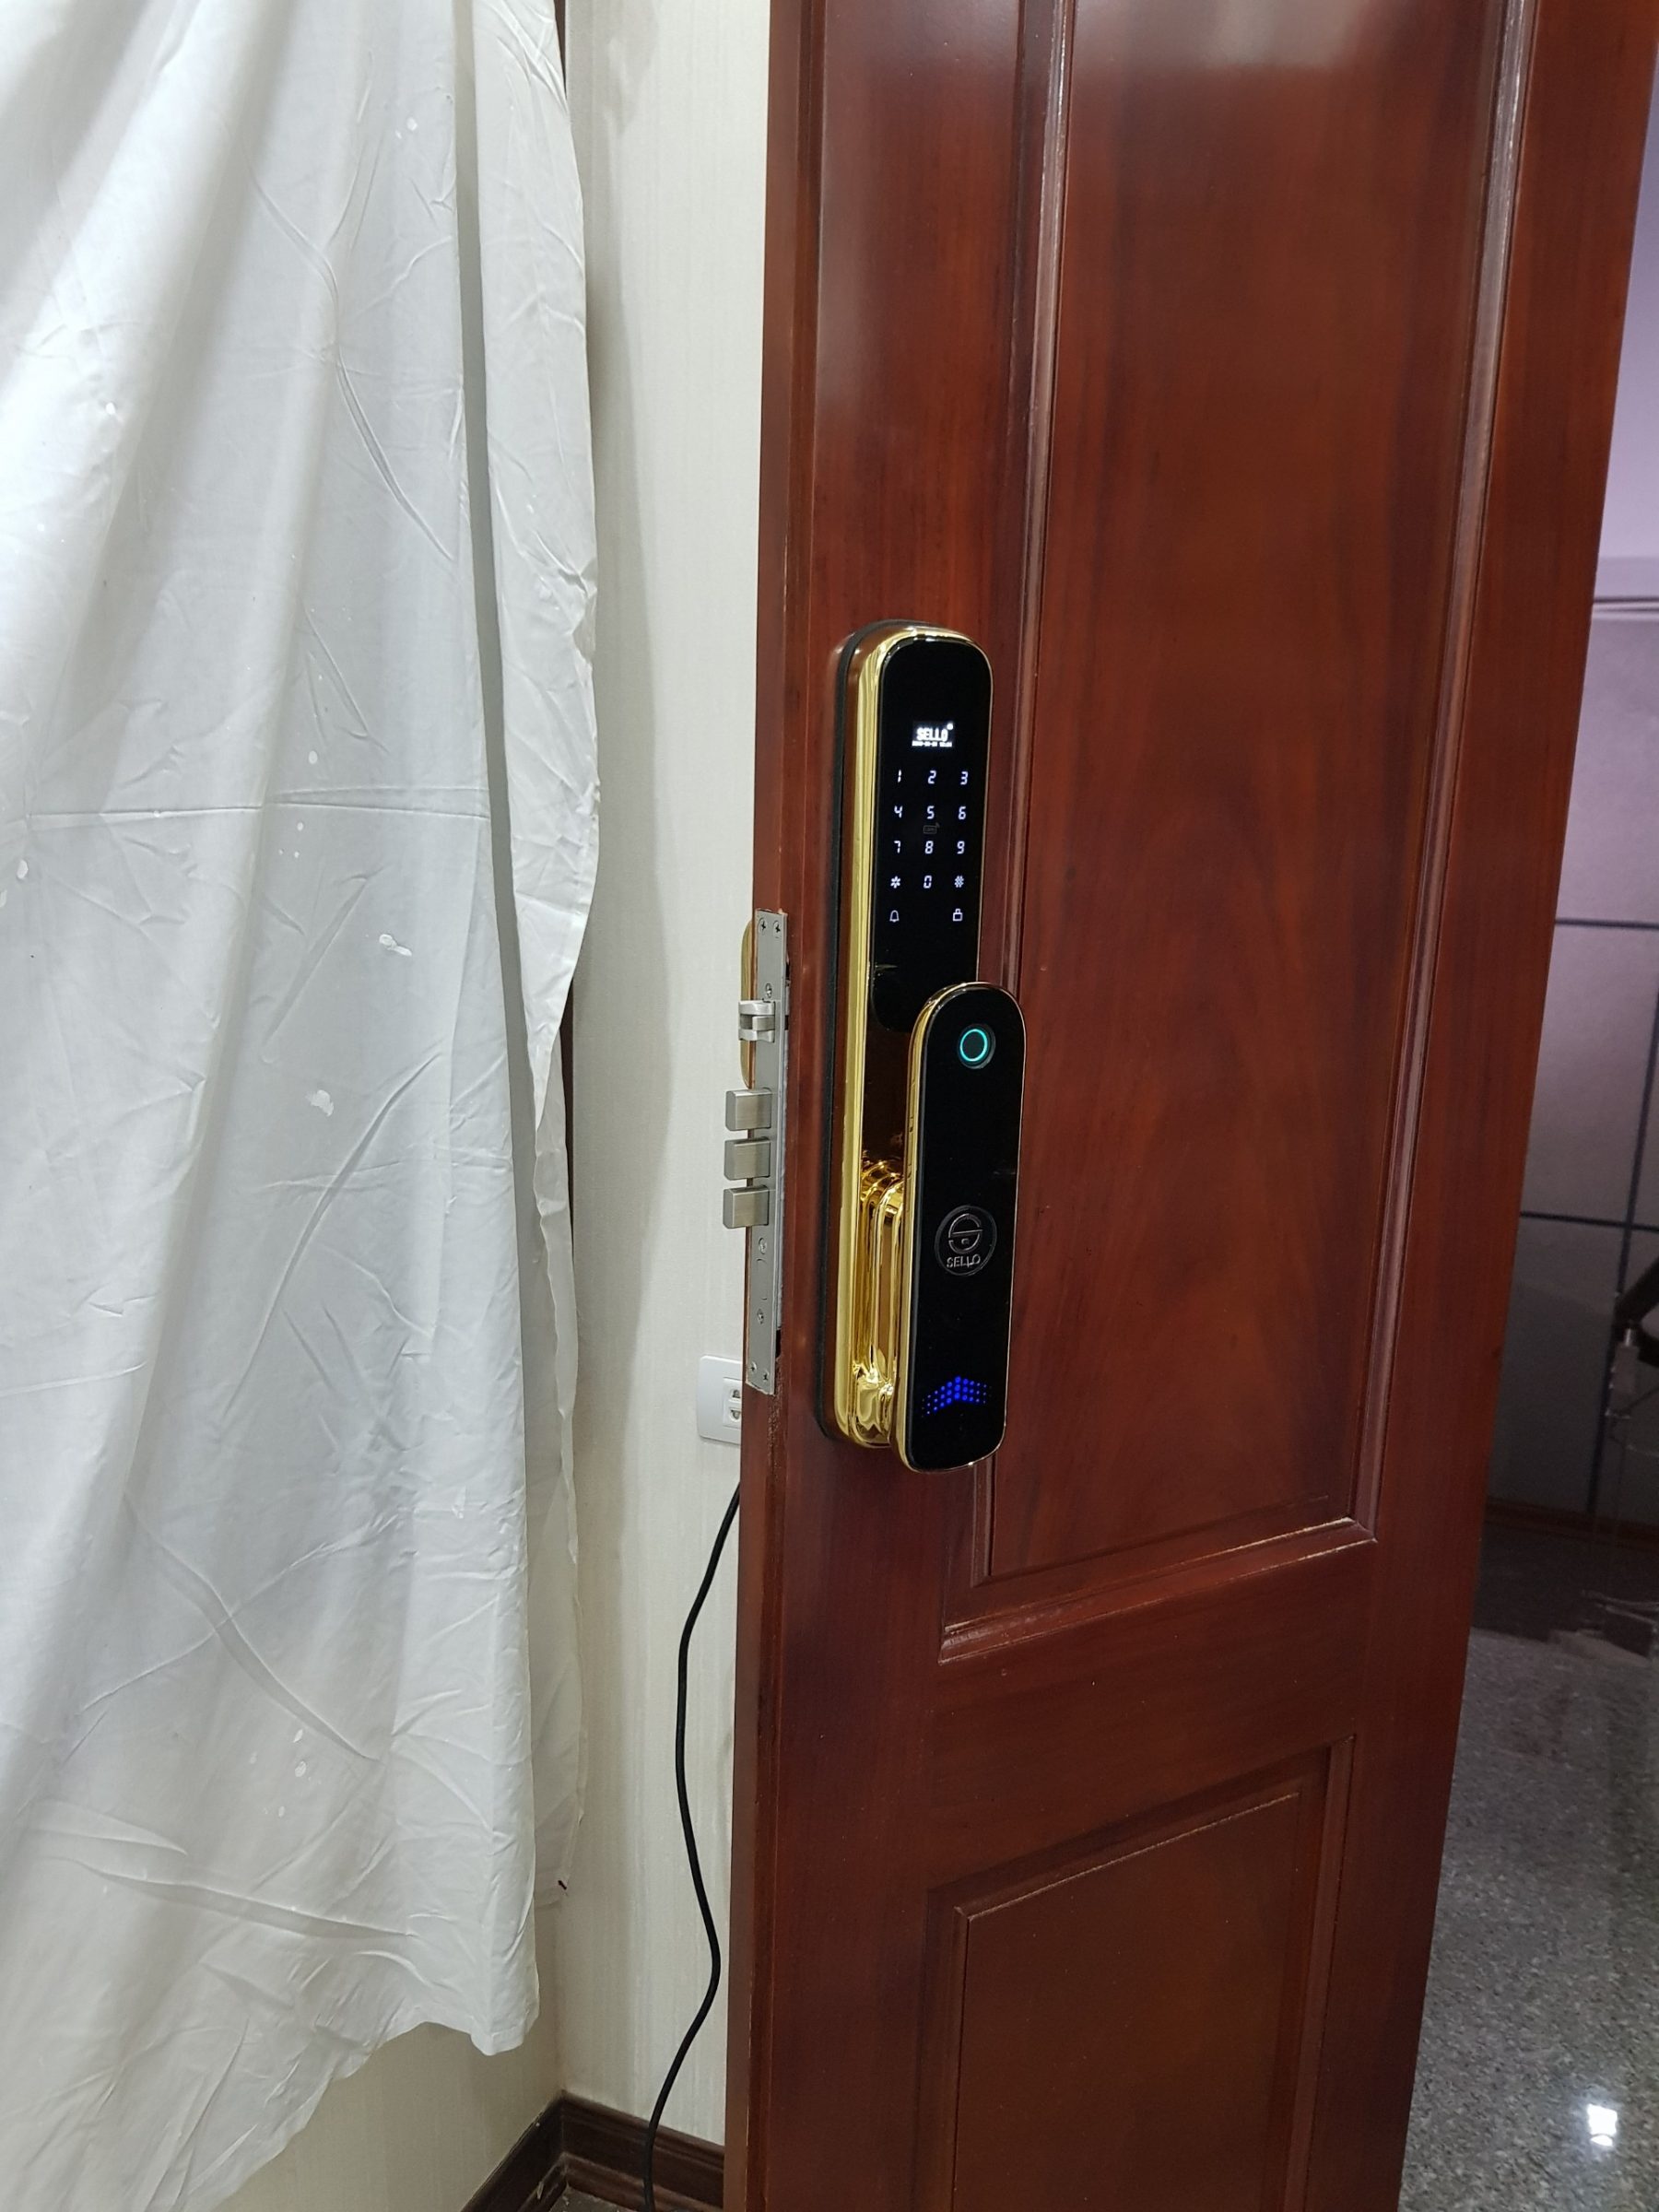 Lắp đặt khóa cửa SELLO A6 tại khách sạn Hacinco - Hà Nội